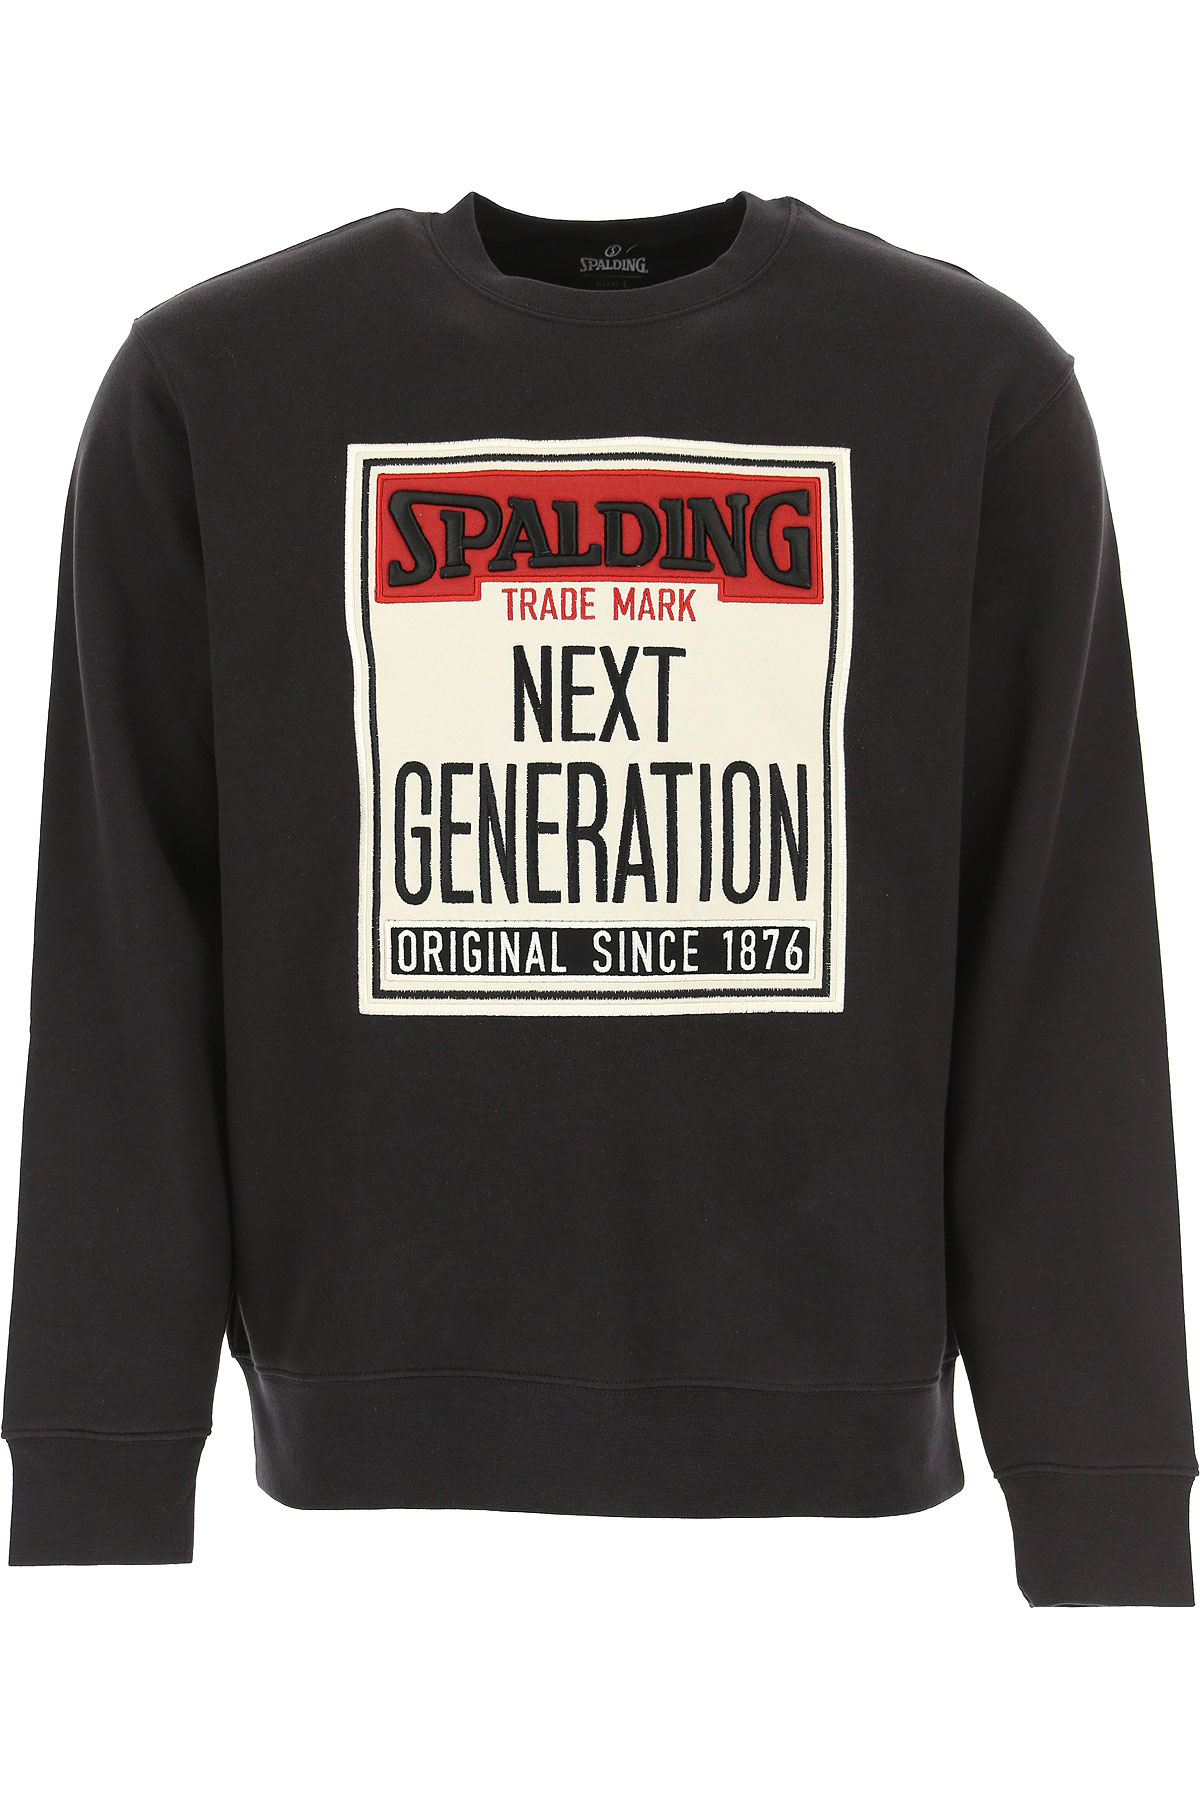 Spalding Sweatshirt für Herren, Kapuzenpulli, Hoodie, Sweats Günstig im Sale, Schwarz, Baumwolle, 2017, L M S XL XXL